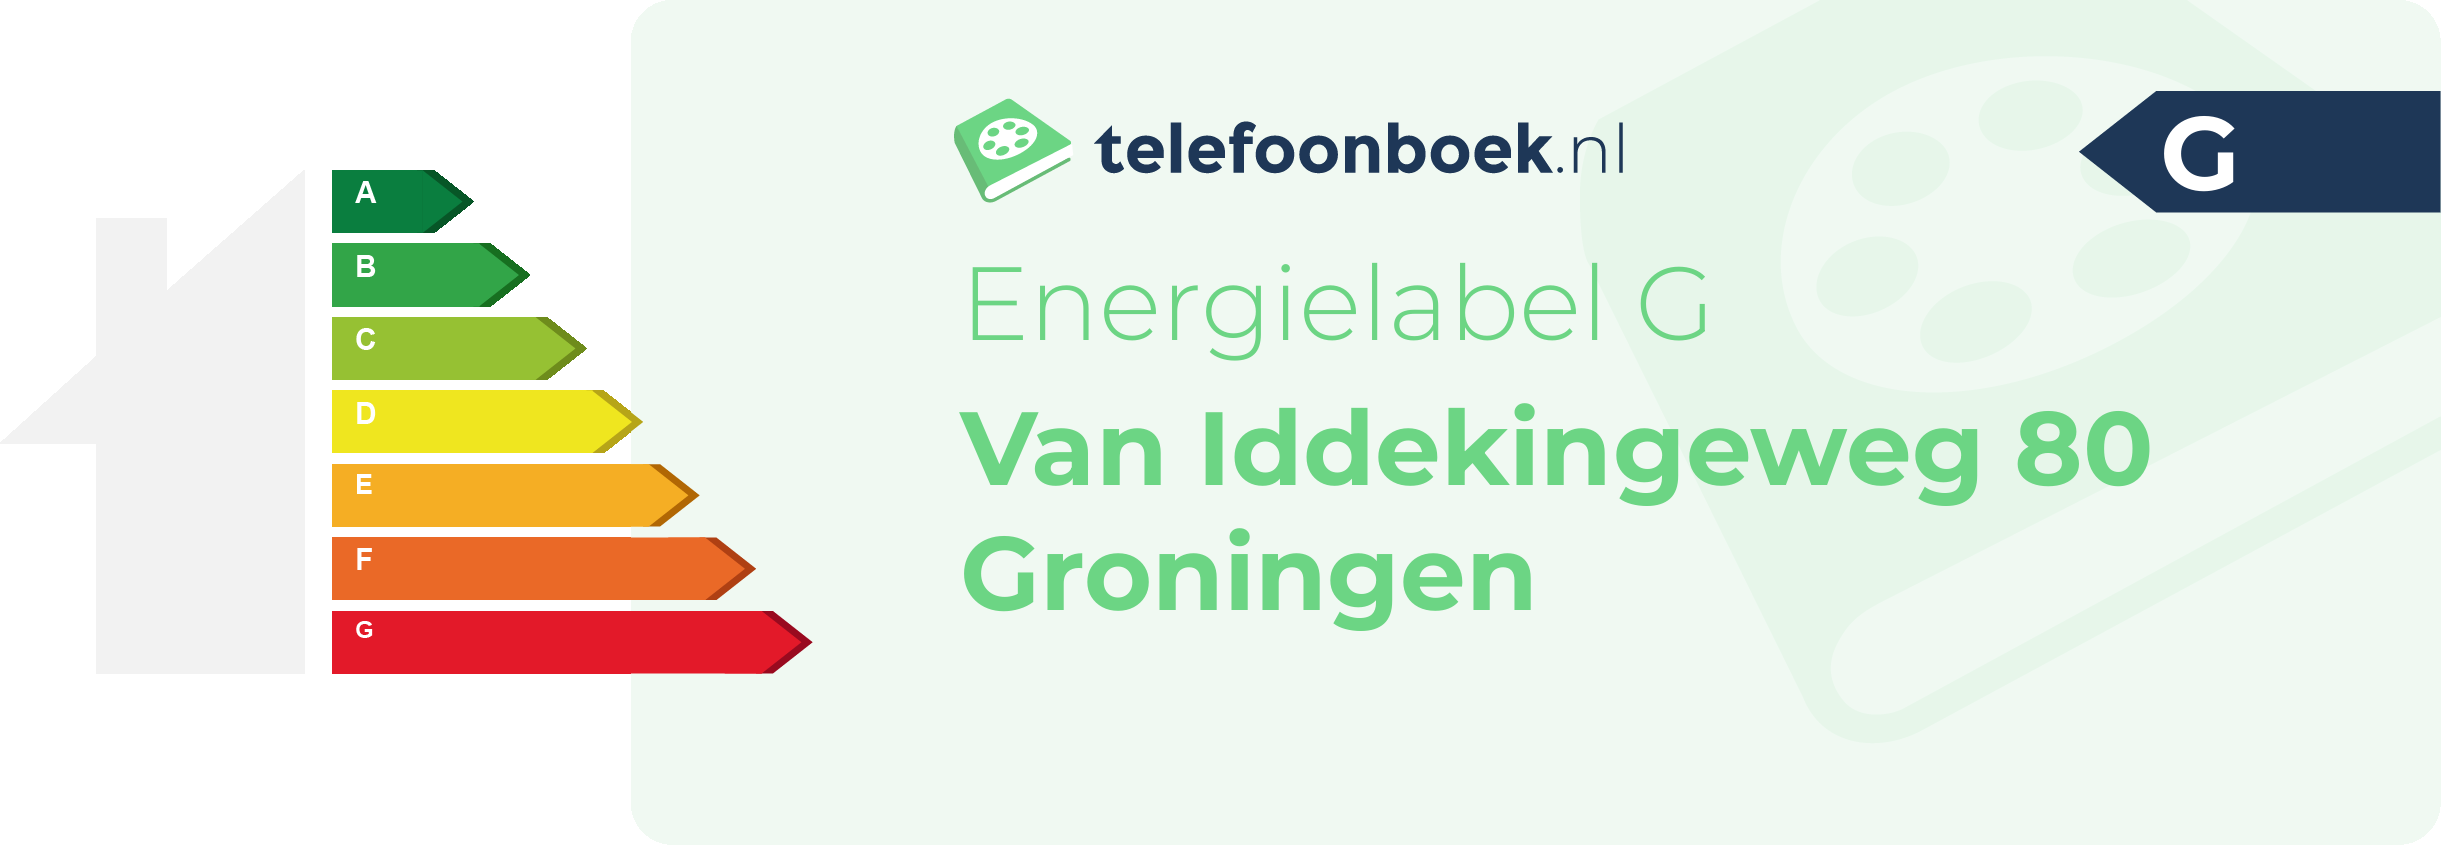 Energielabel Van Iddekingeweg 80 Groningen